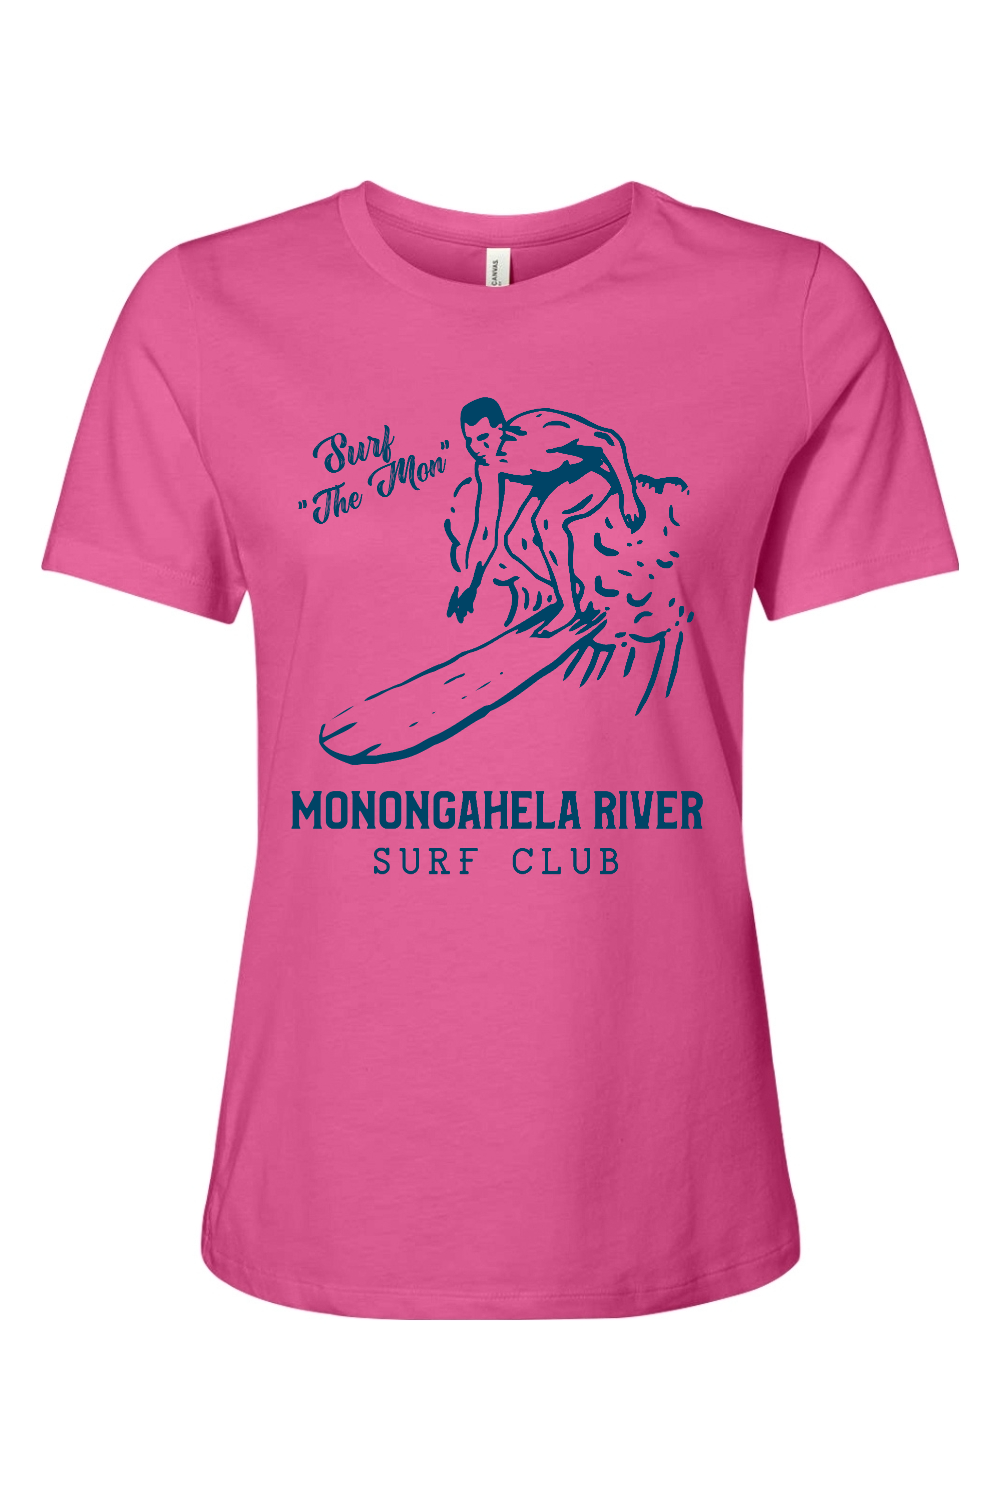 Monongahela River Surf Club - Ladies Tee - Yinzylvania